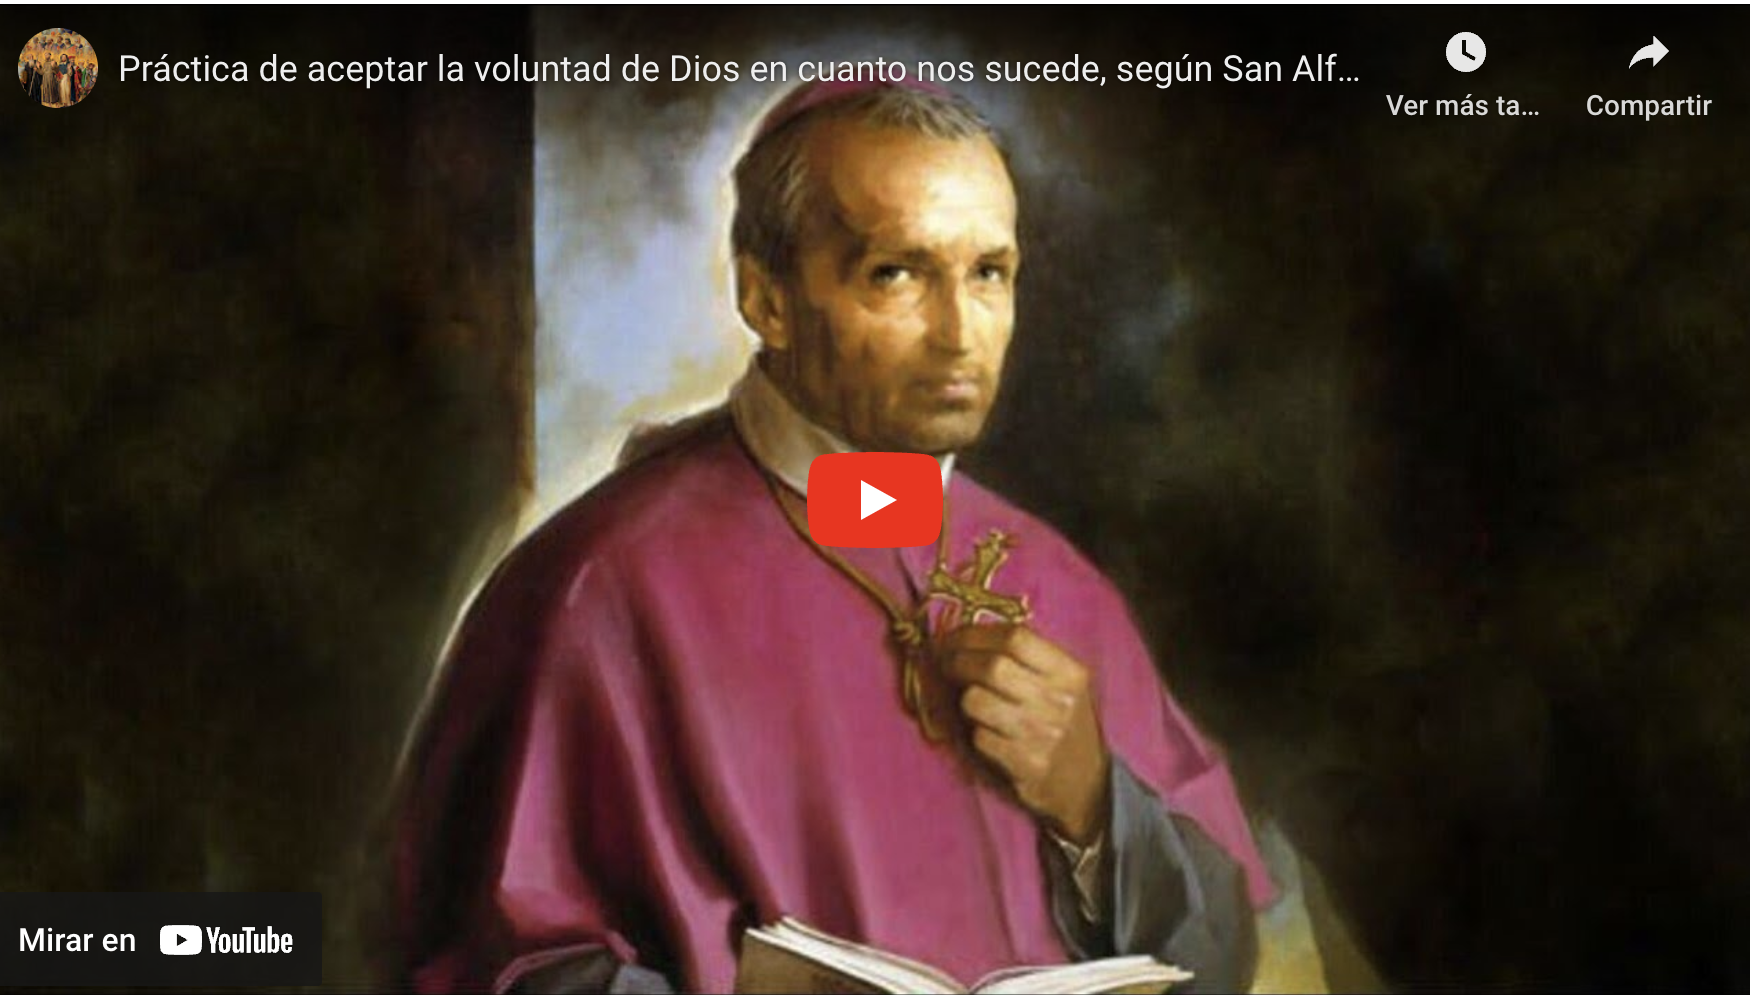 Práctica de aceptar la voluntad de Dios en cuanto nos sucede, según San Alfonso María de Ligorio